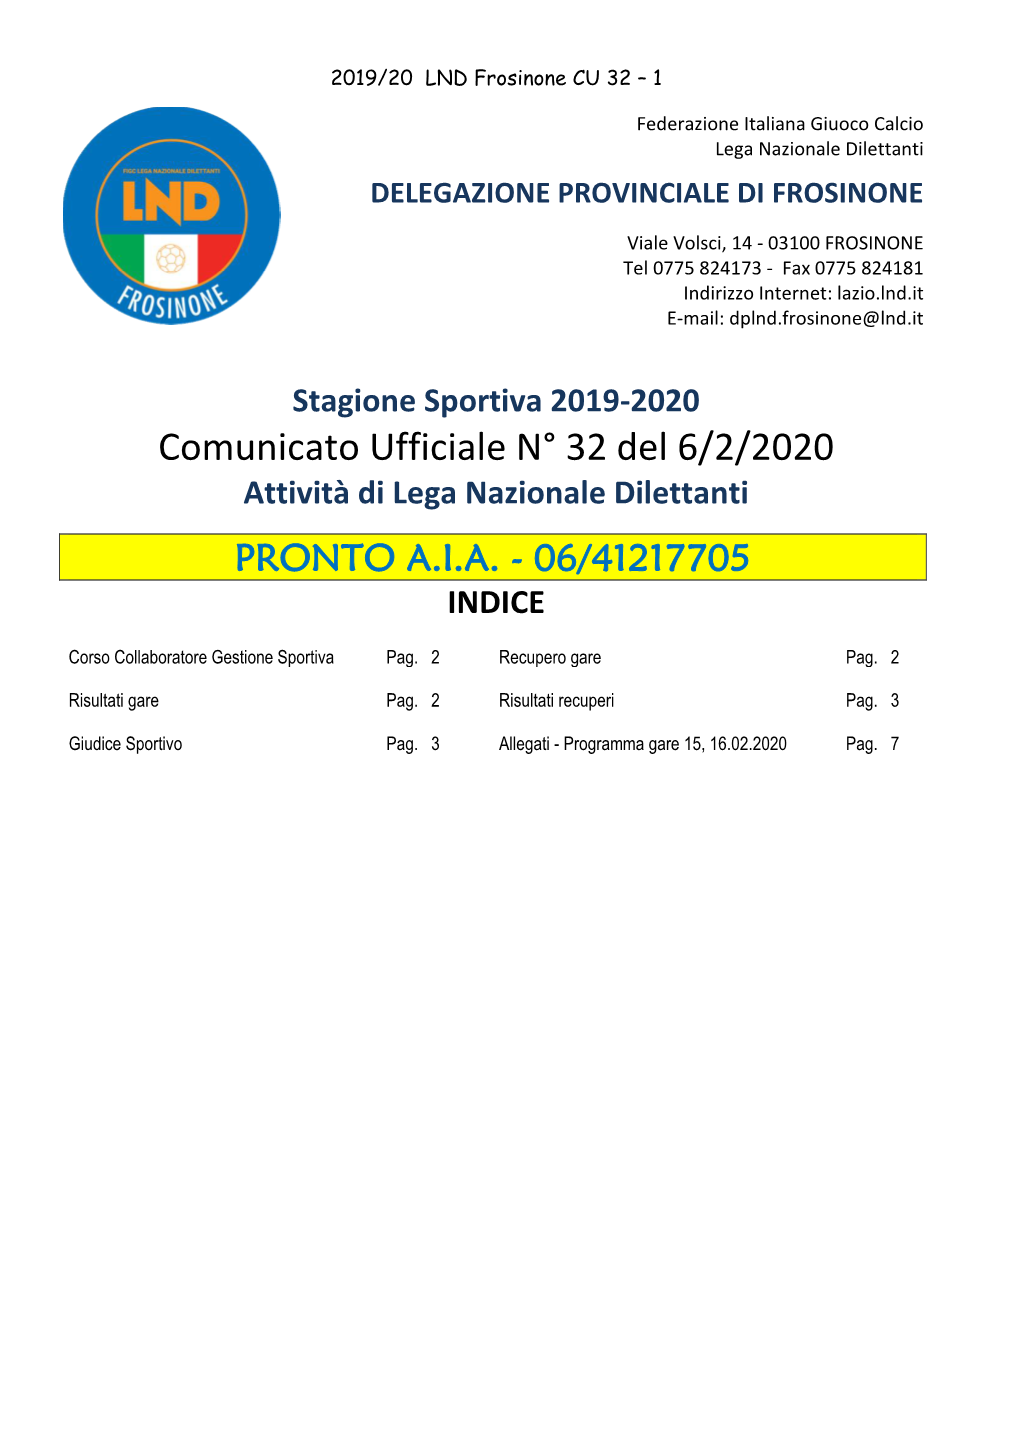 Comunicato Ufficiale N° 32 Del 6/2/2020 Attività Di Lega Nazionale Dilettanti